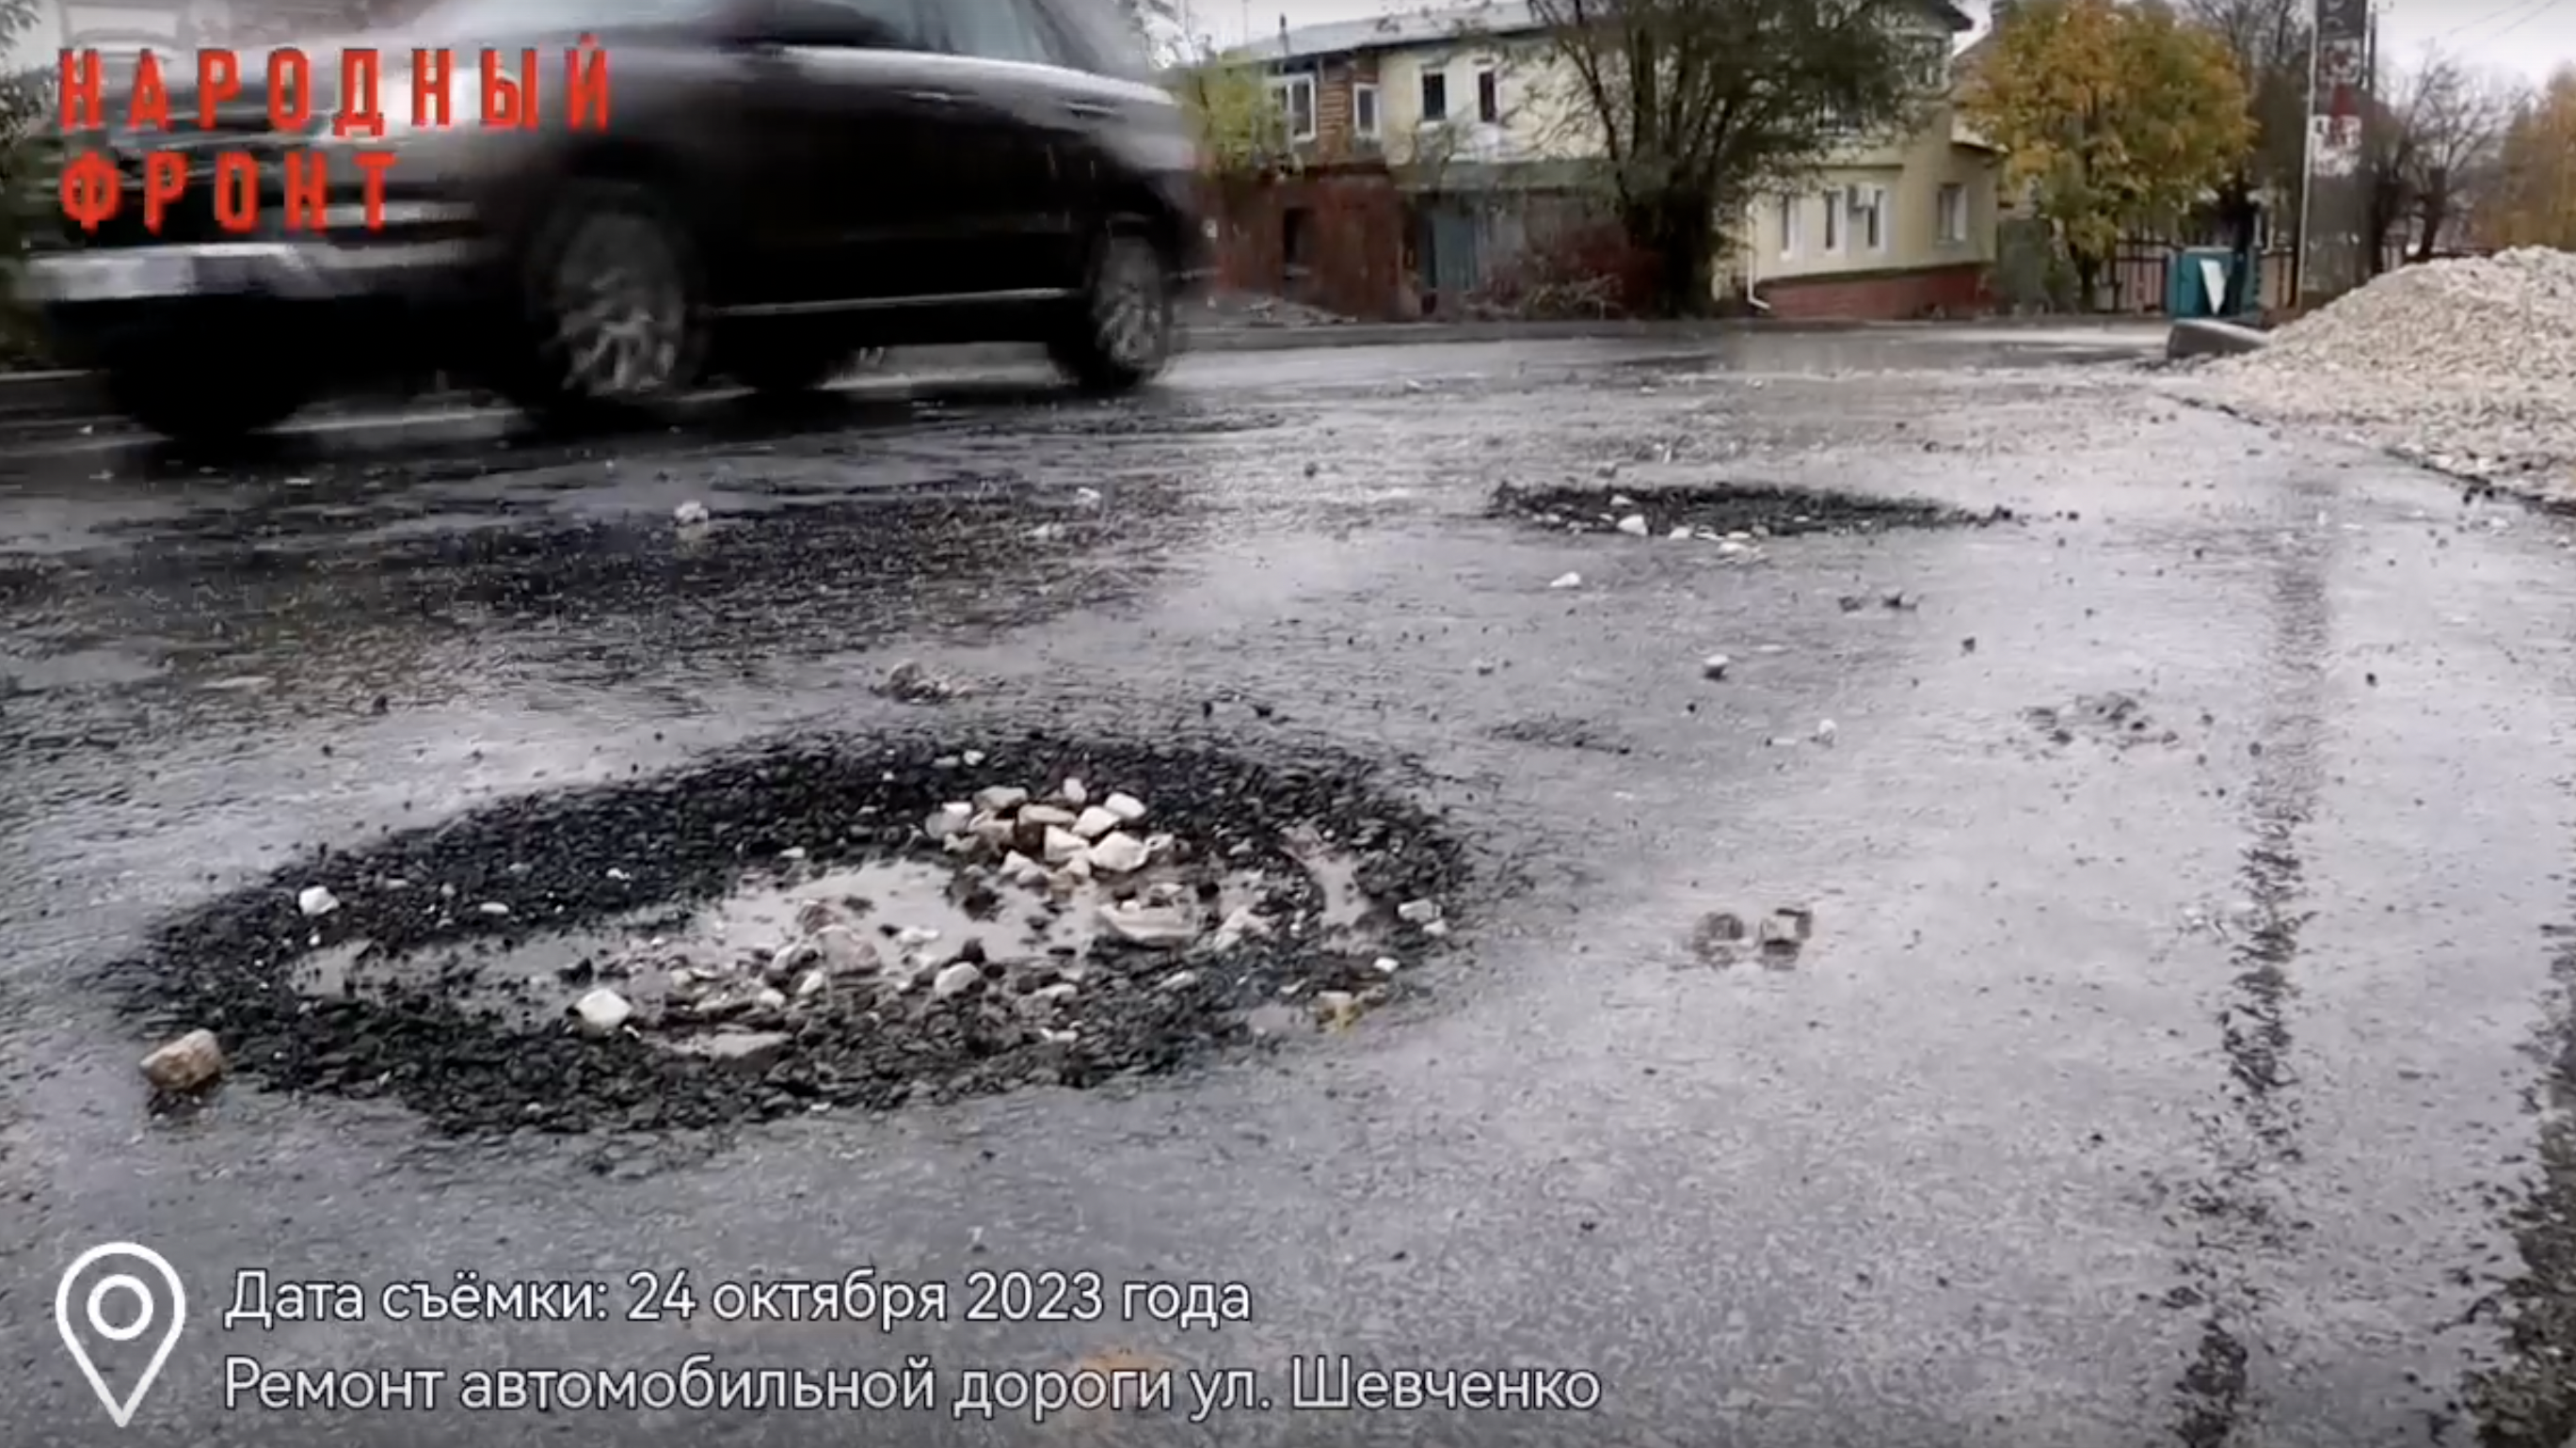 Активисты ОНФ высказали претензии к срокам и качеству ремонта дорог в Ульяновске